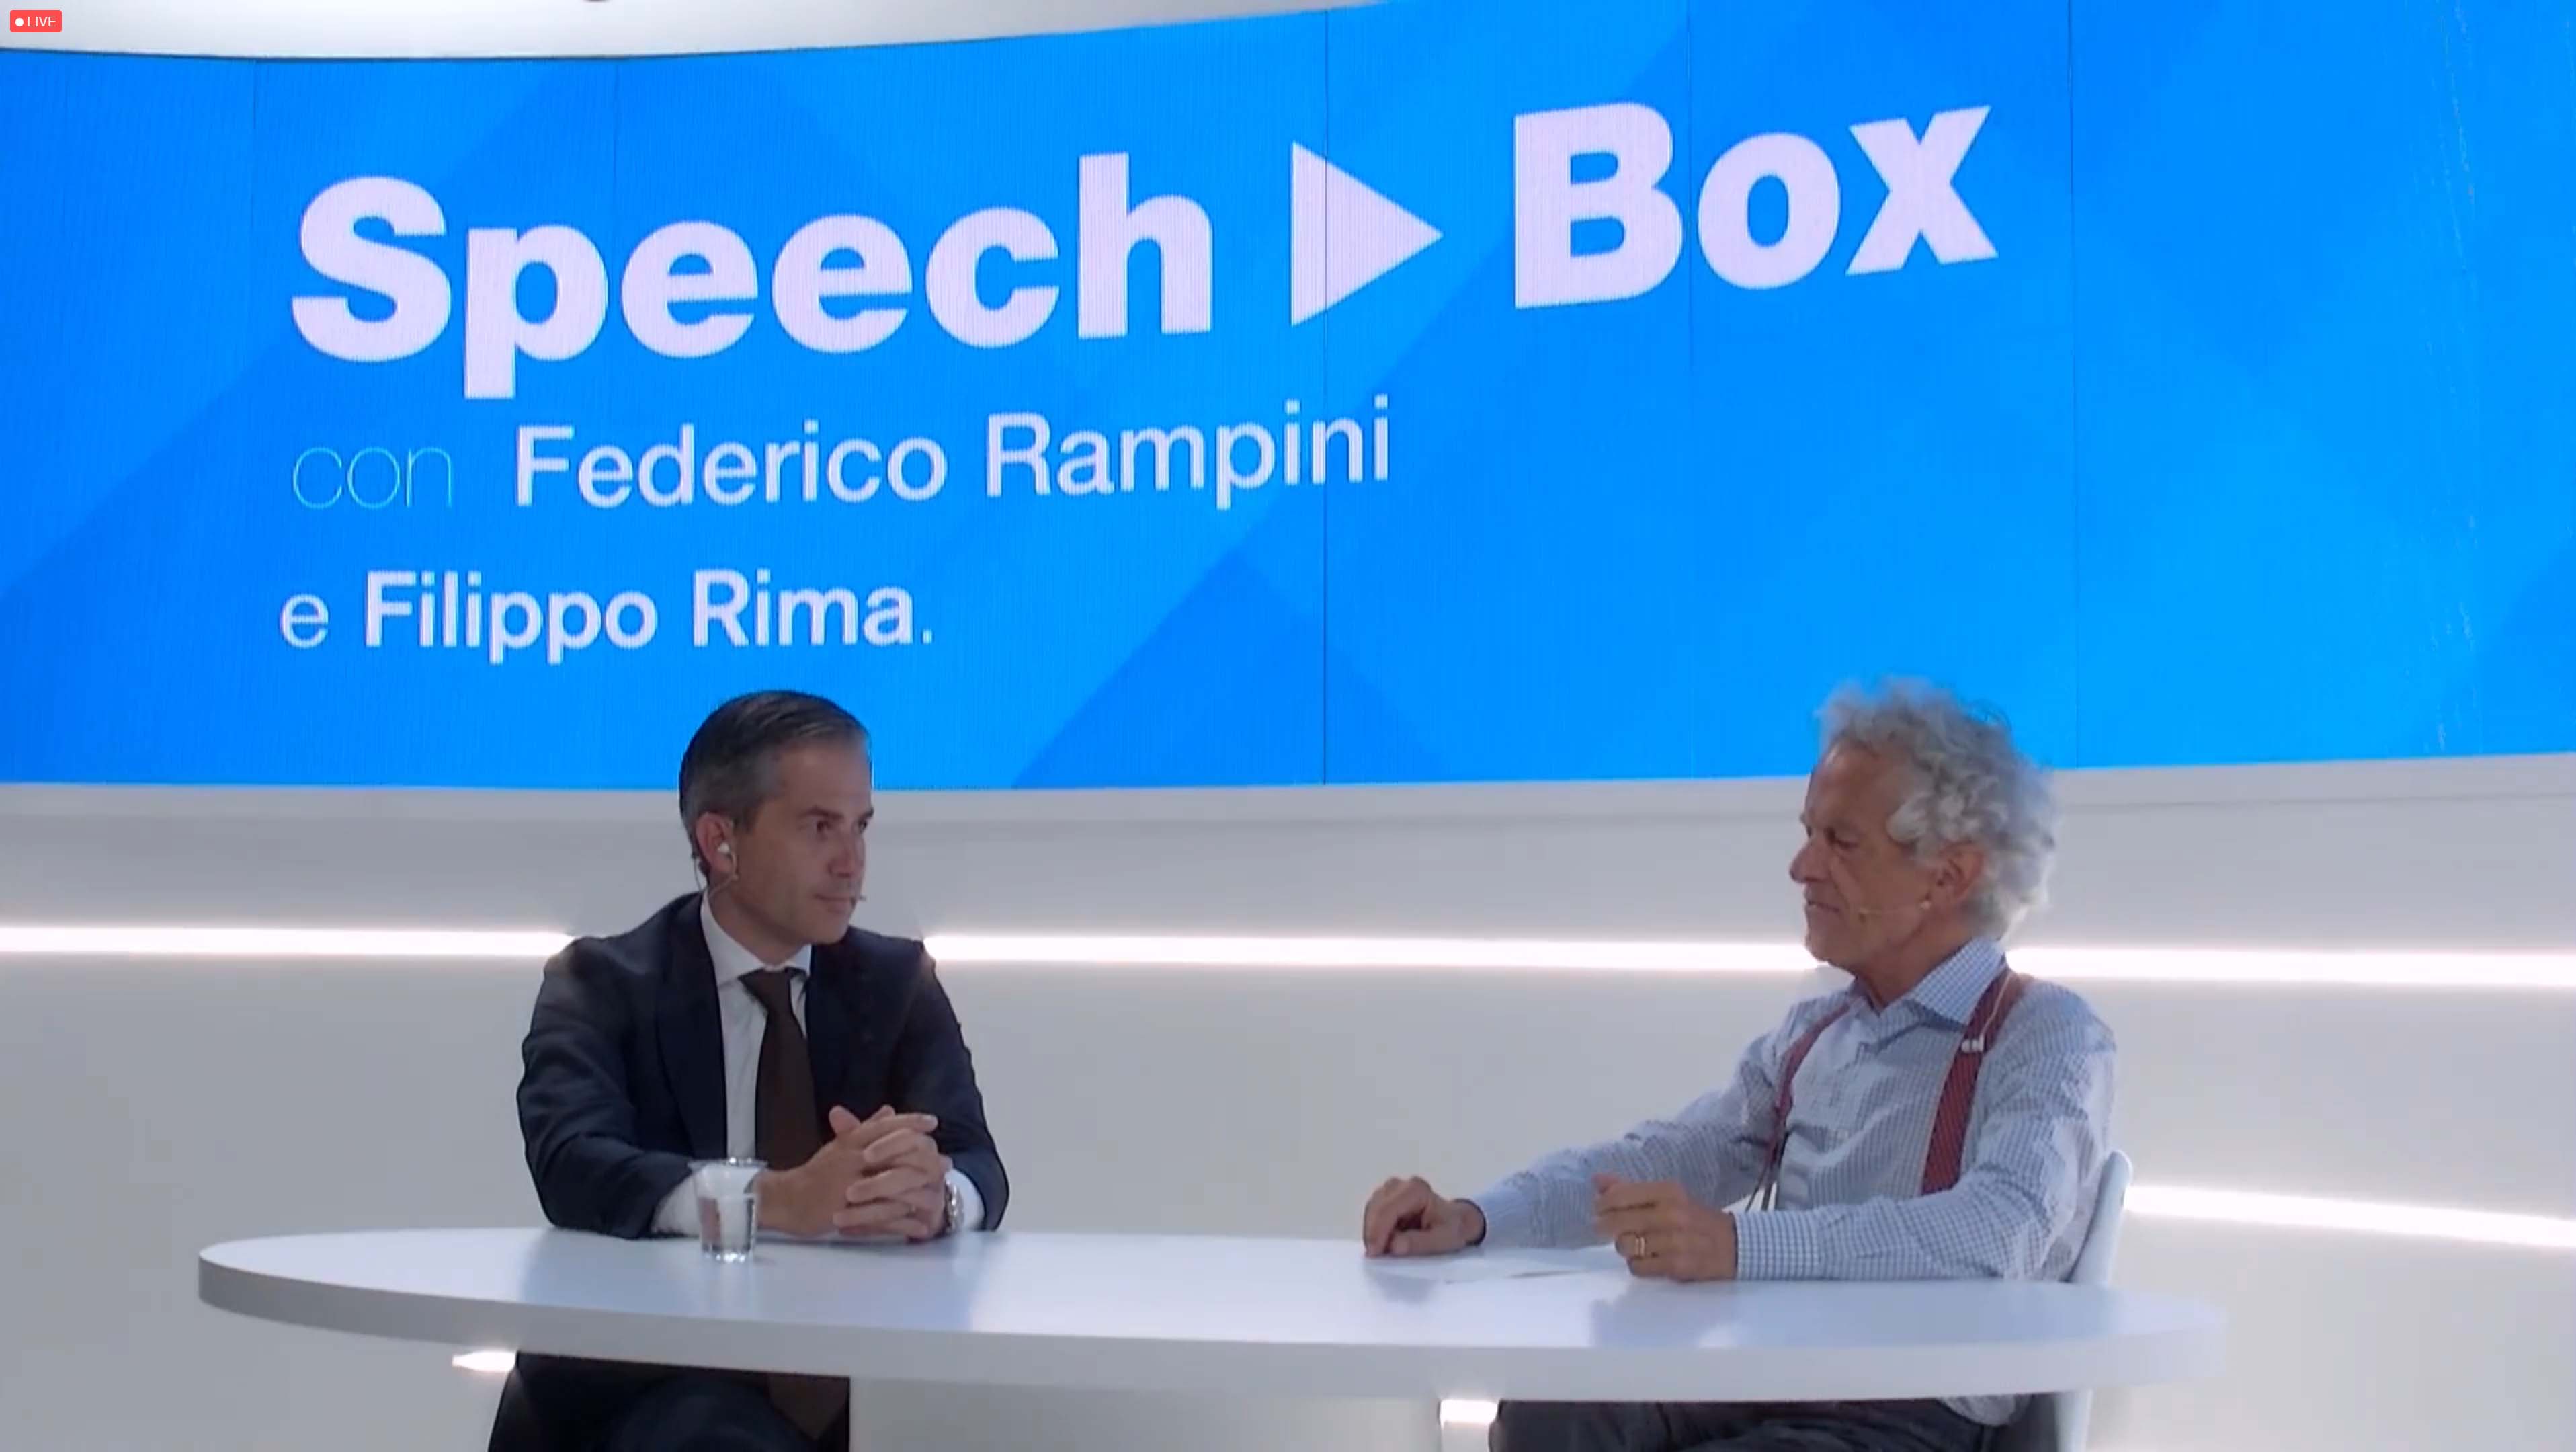 financialounge -  Credit Suisse Federico Rampini salone del risparmio SpeechBox video